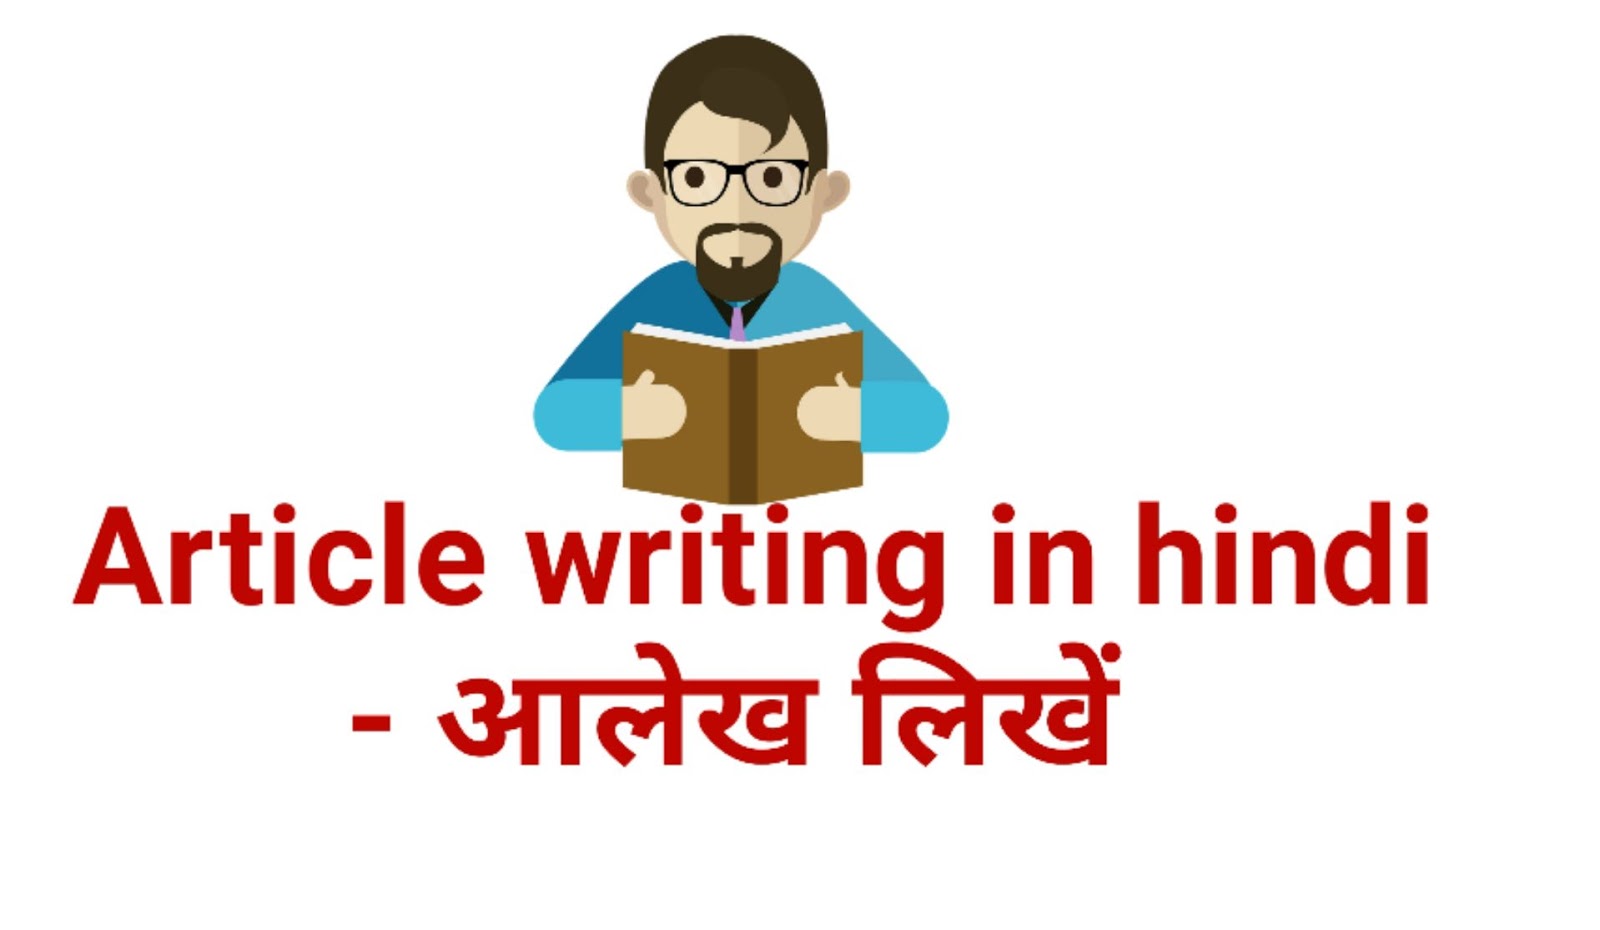 Article writing in hindi - आलेख लिखें। - Article in Hindi